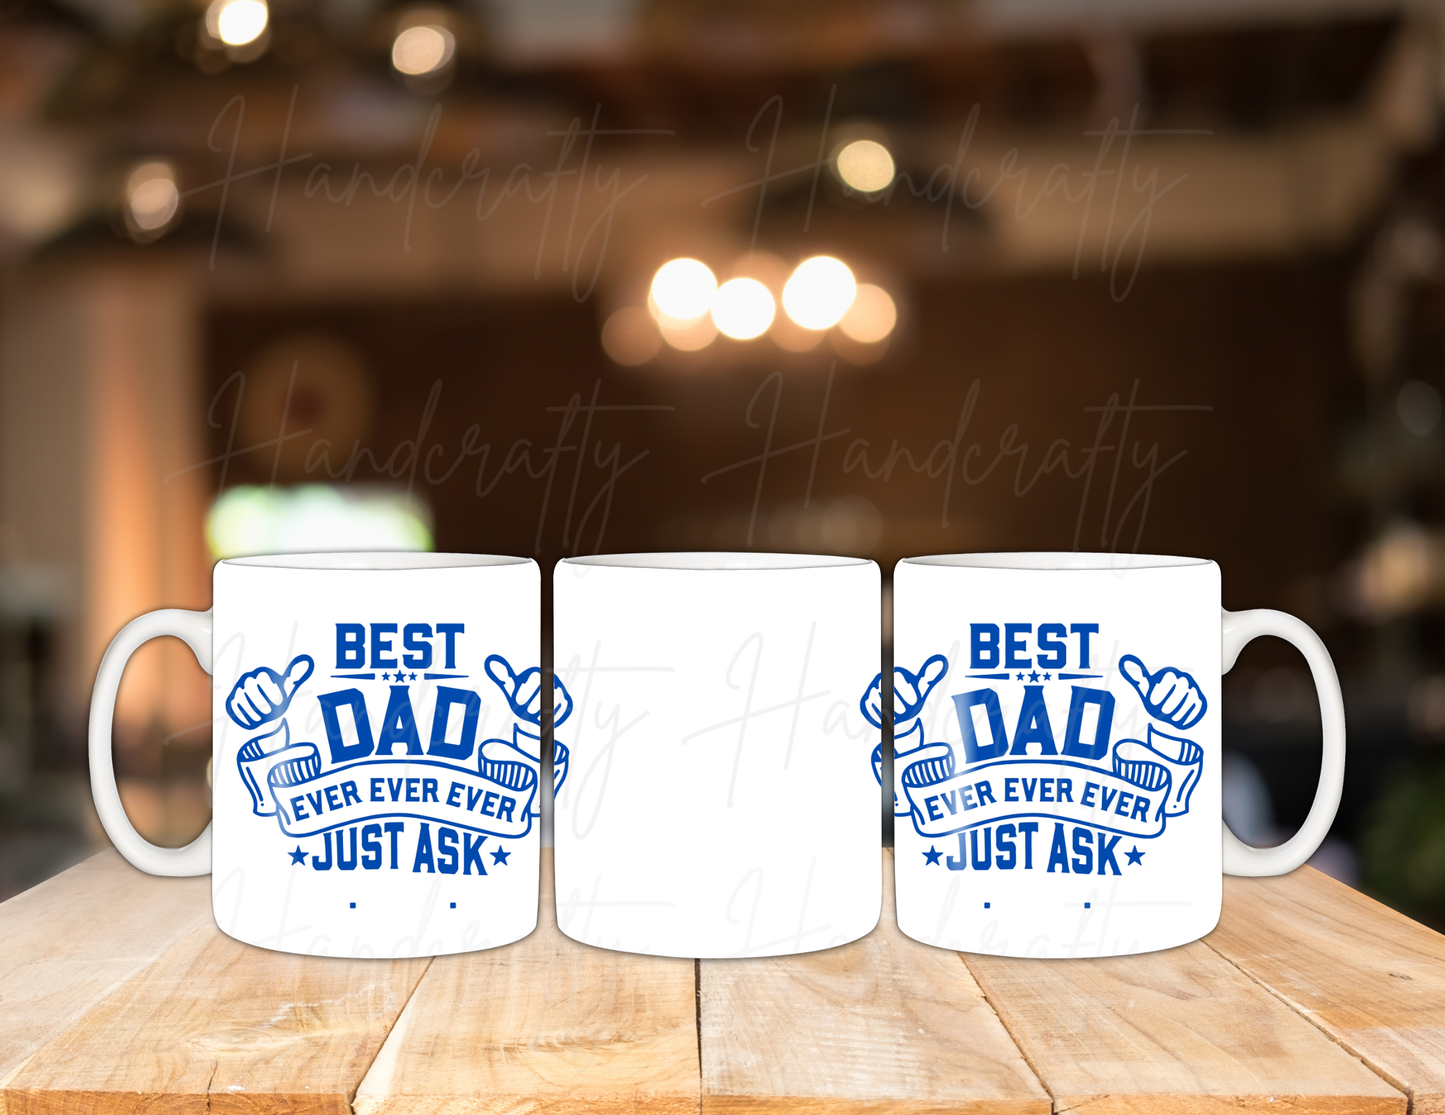 Father's Day mugs, Father's Day gifts, Custom Father's Day mugs, Personalized Father's Day mugs, Best Father's Day mugs, World's Best Dad mug, Super Dad mug, Best Dad Ever mug, #1 Dad mug, Dad life mug, New Dad mug, Funny Father's Day mug, Inspirational Father's Day mug, Cool Dad mug, Dad joke mug, Grandpa mug, Papa mug, Stepdad mug, Custom message mug for Dad, Name engraved mug for Dad, custom gifts, personalized gift, gift for dad, DAD best dad ever just ask